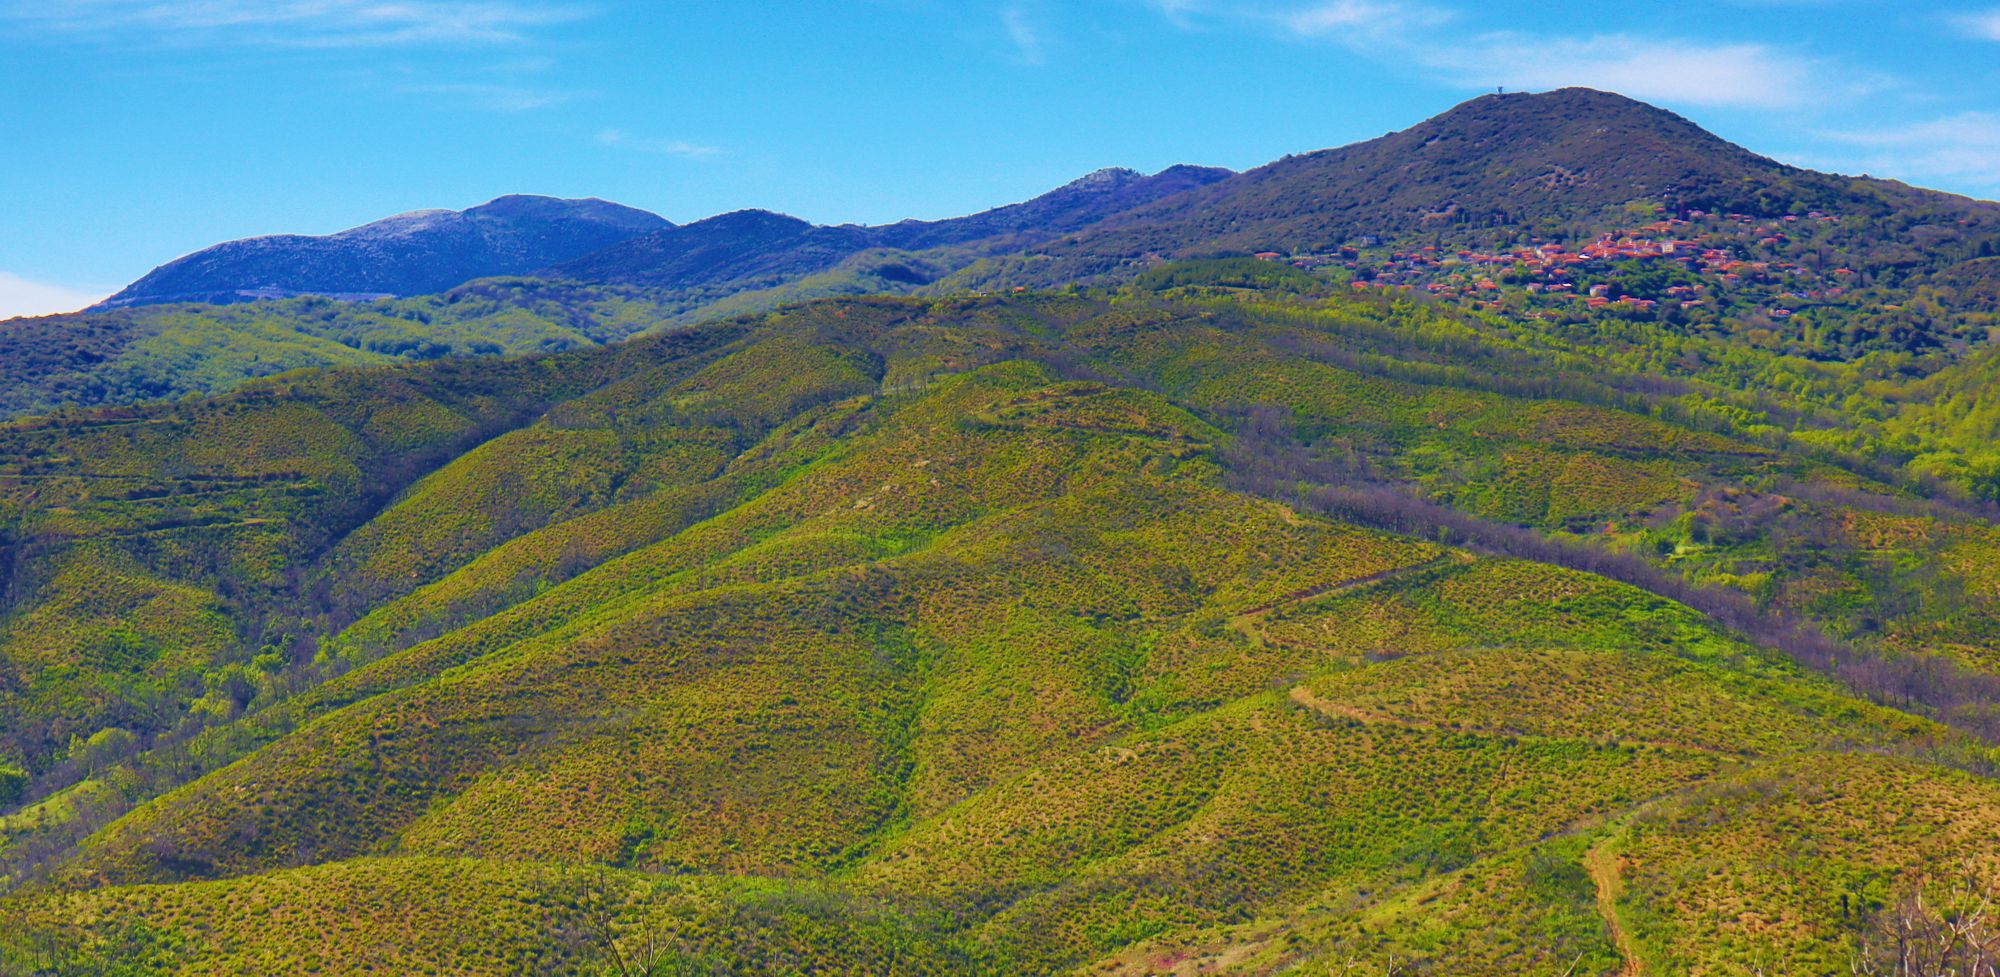 Βλάστηση του Λύκαιου: Οι ζώνες των δρυοδασών και των γυμνών κορυφών κάτω και πάνω από το χωριό Ίσαρης